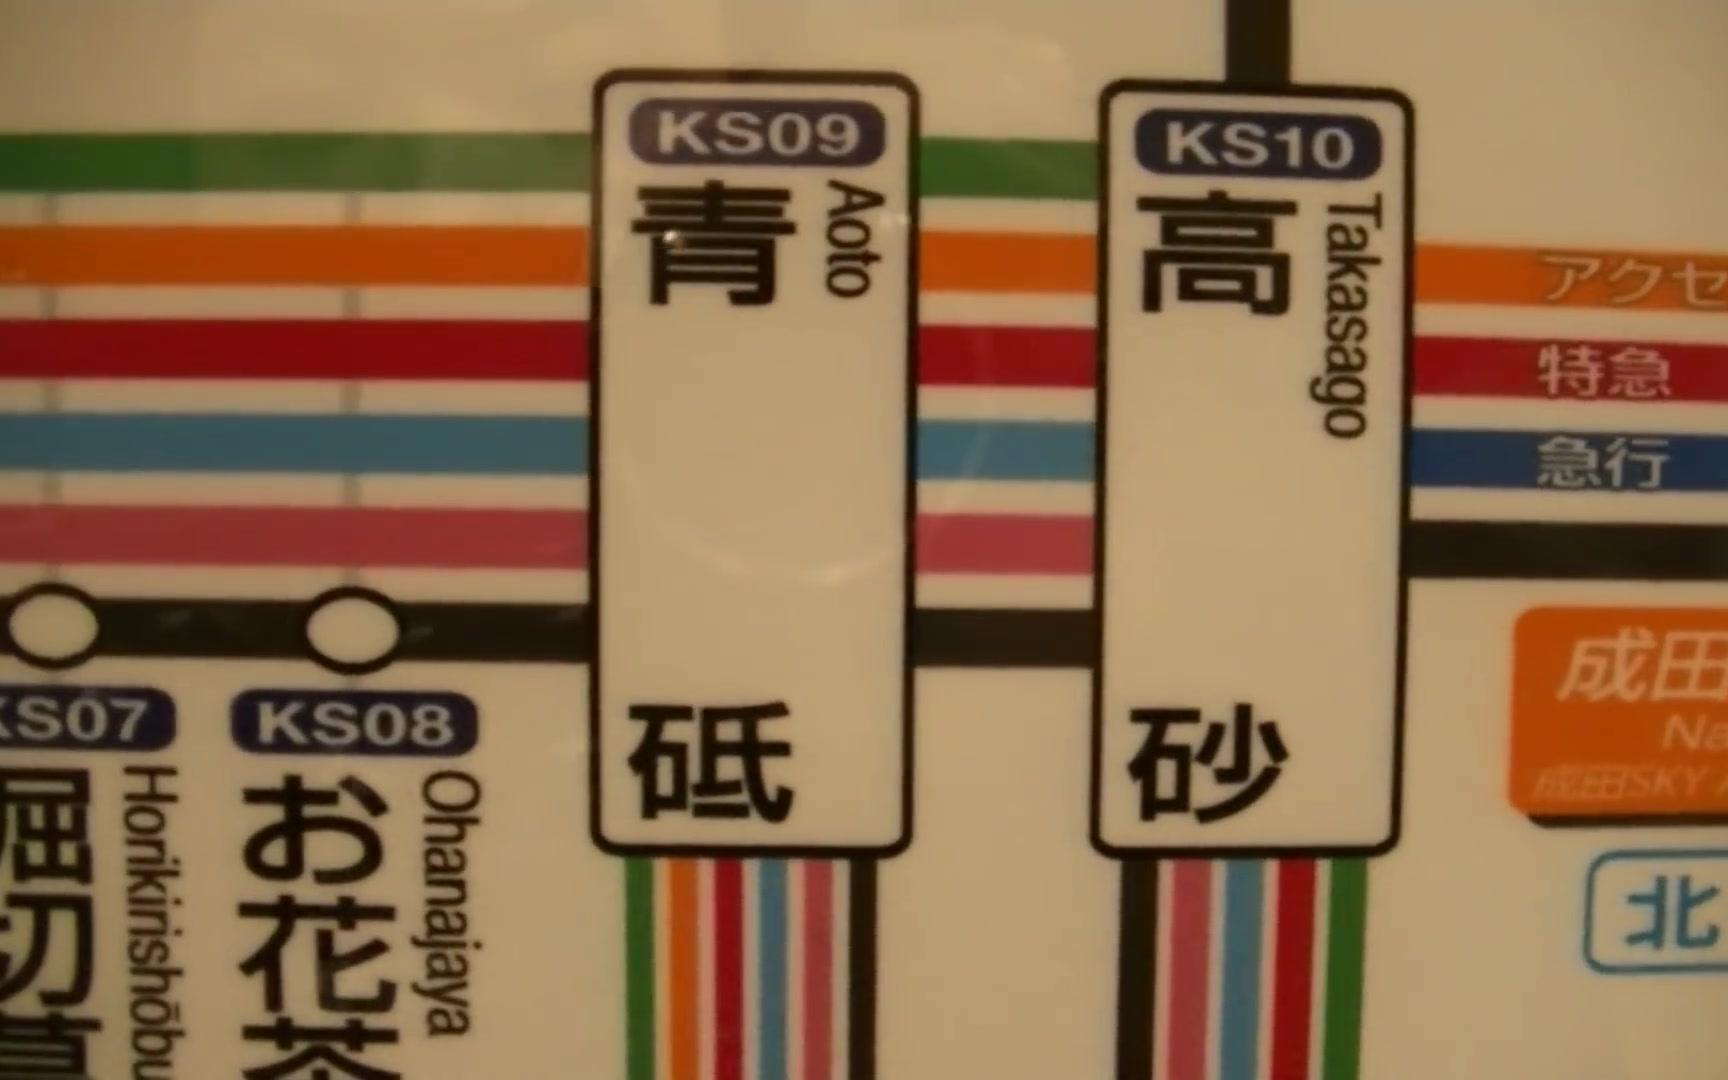 京成本線(Keisei Main Line、京成本线、게이세이 본선) - 日本鉄道探検隊